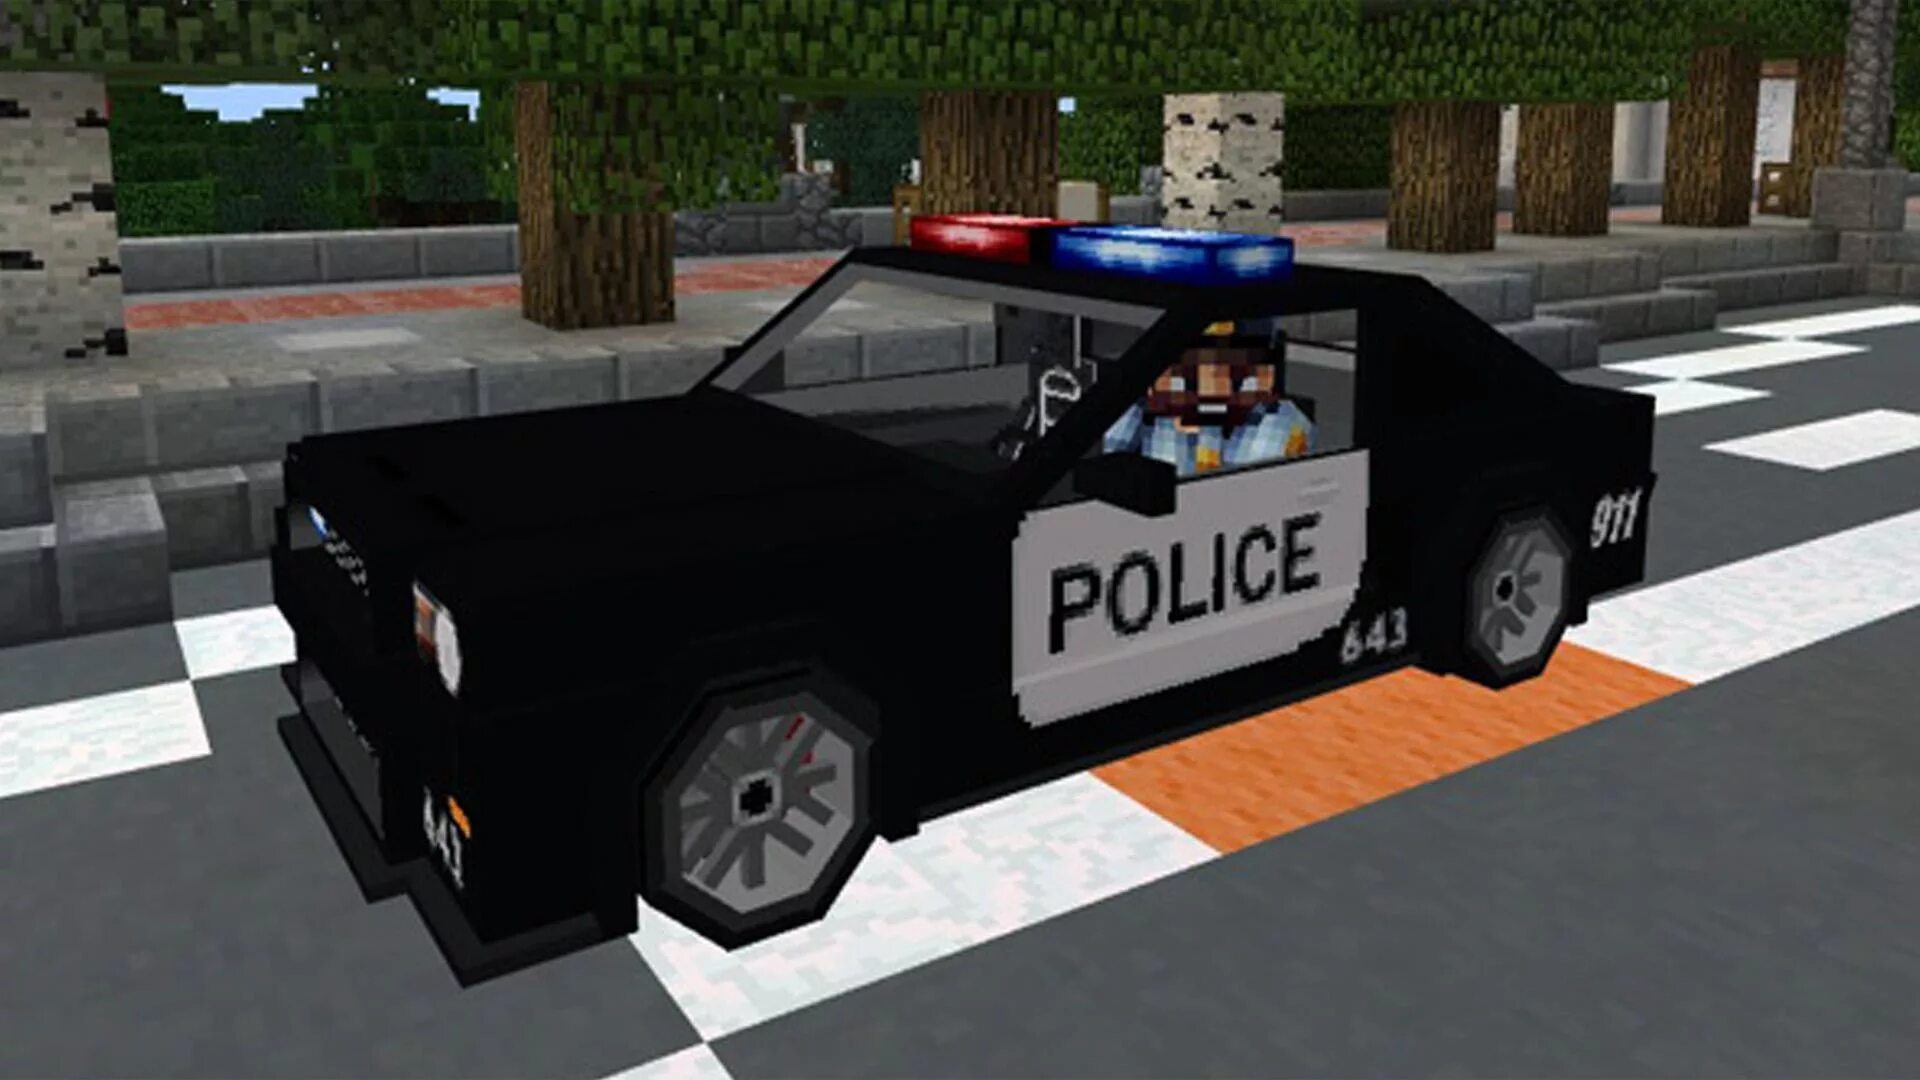 Машины полиции майнкрафт. Полицейская машина в МАЙНКРАФТЕ. Мод на полицейскую машину в МАЙНКРАФТЕ. Полицейская машина в МАЙНКРАФТА. Машина полиции майнкрафт.